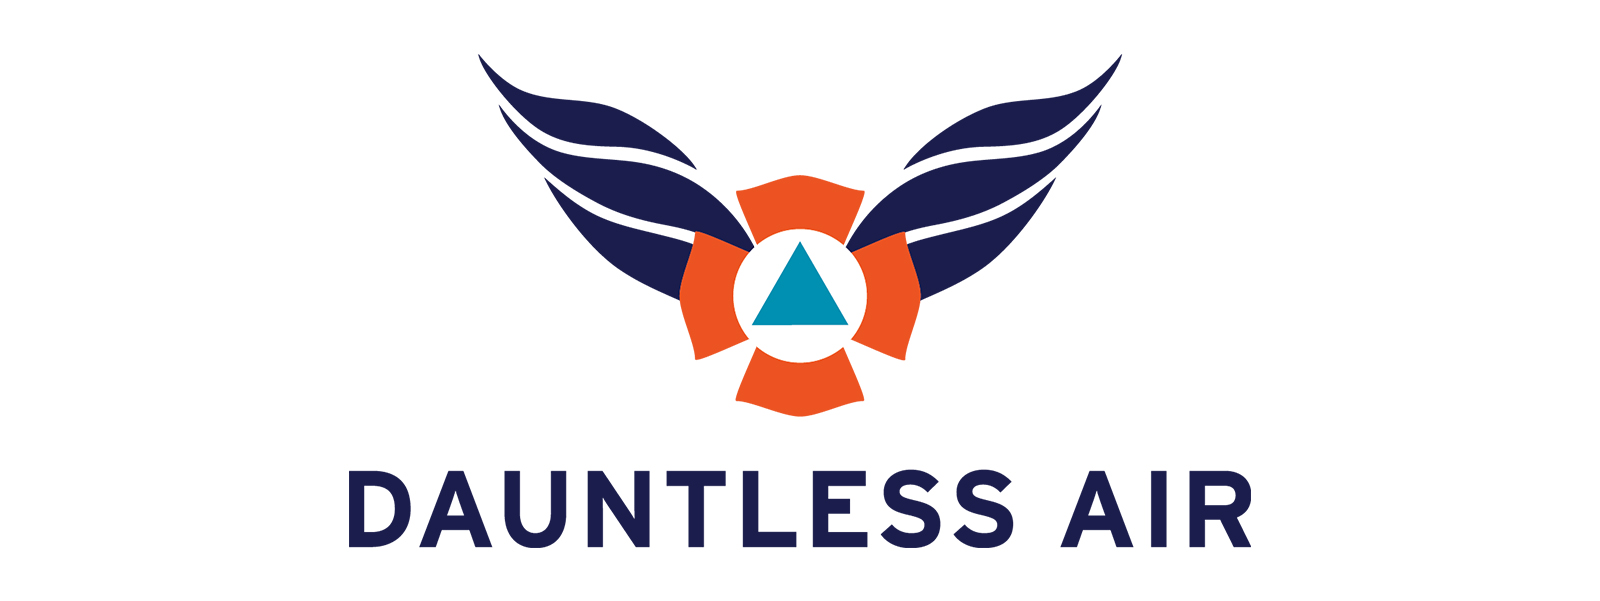 logos-Dauntless Air_2